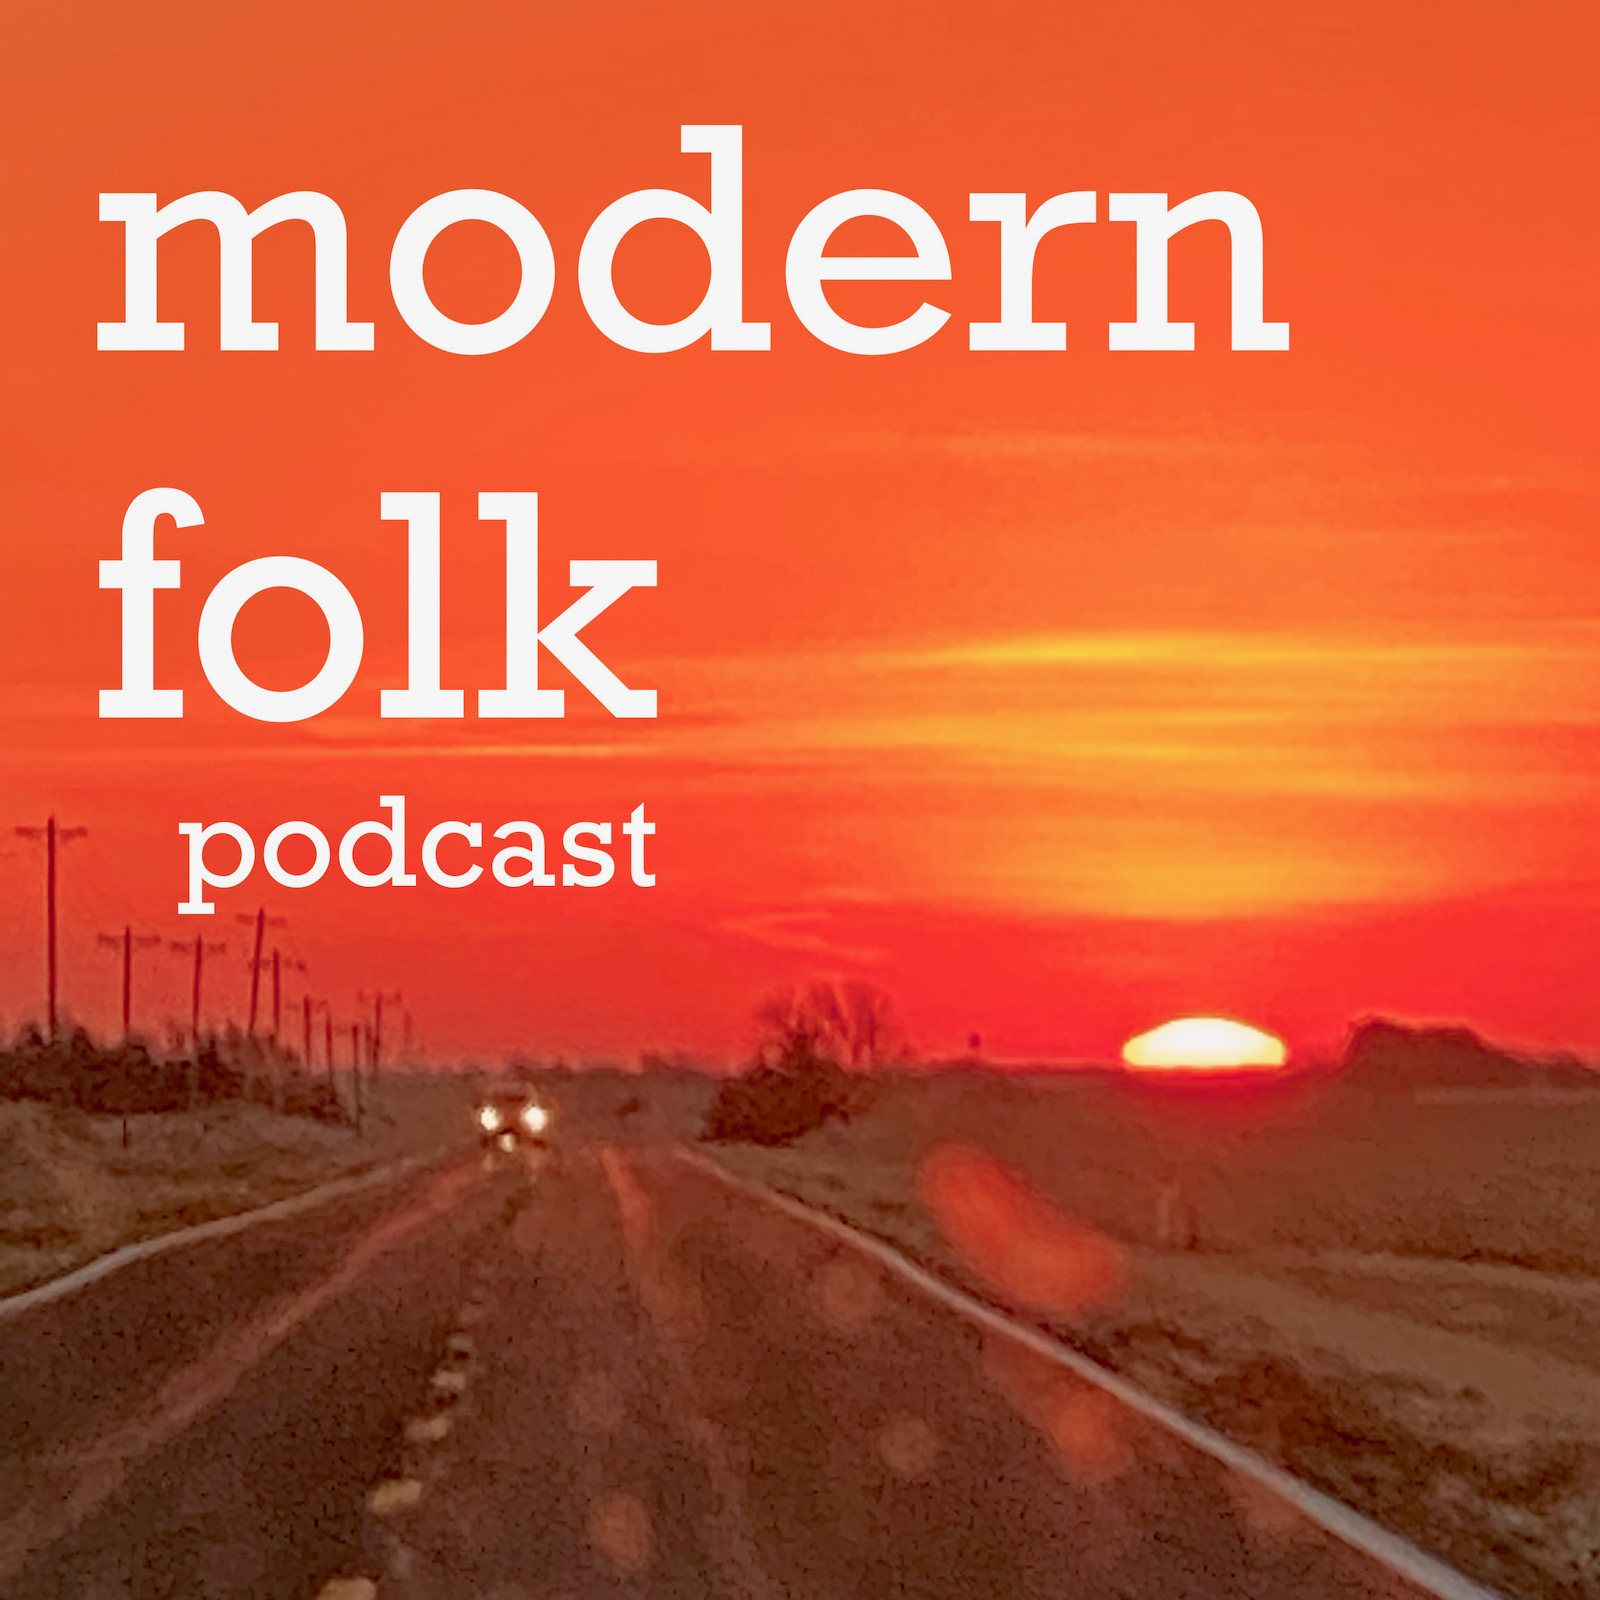 Artwork for modern folk podcast